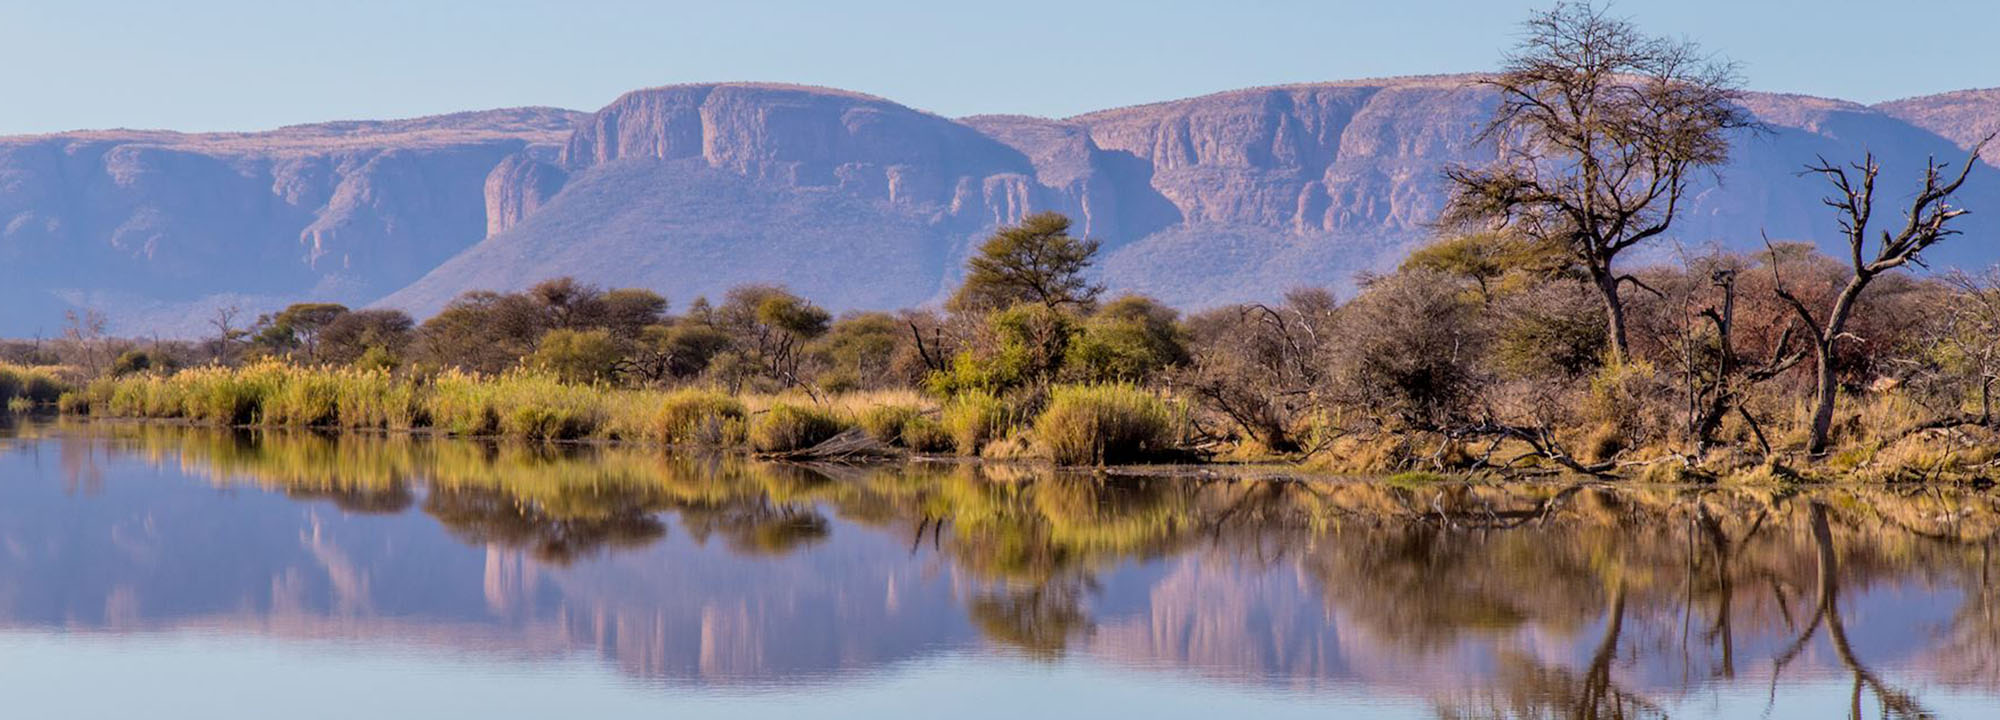 safari waterberg south africa